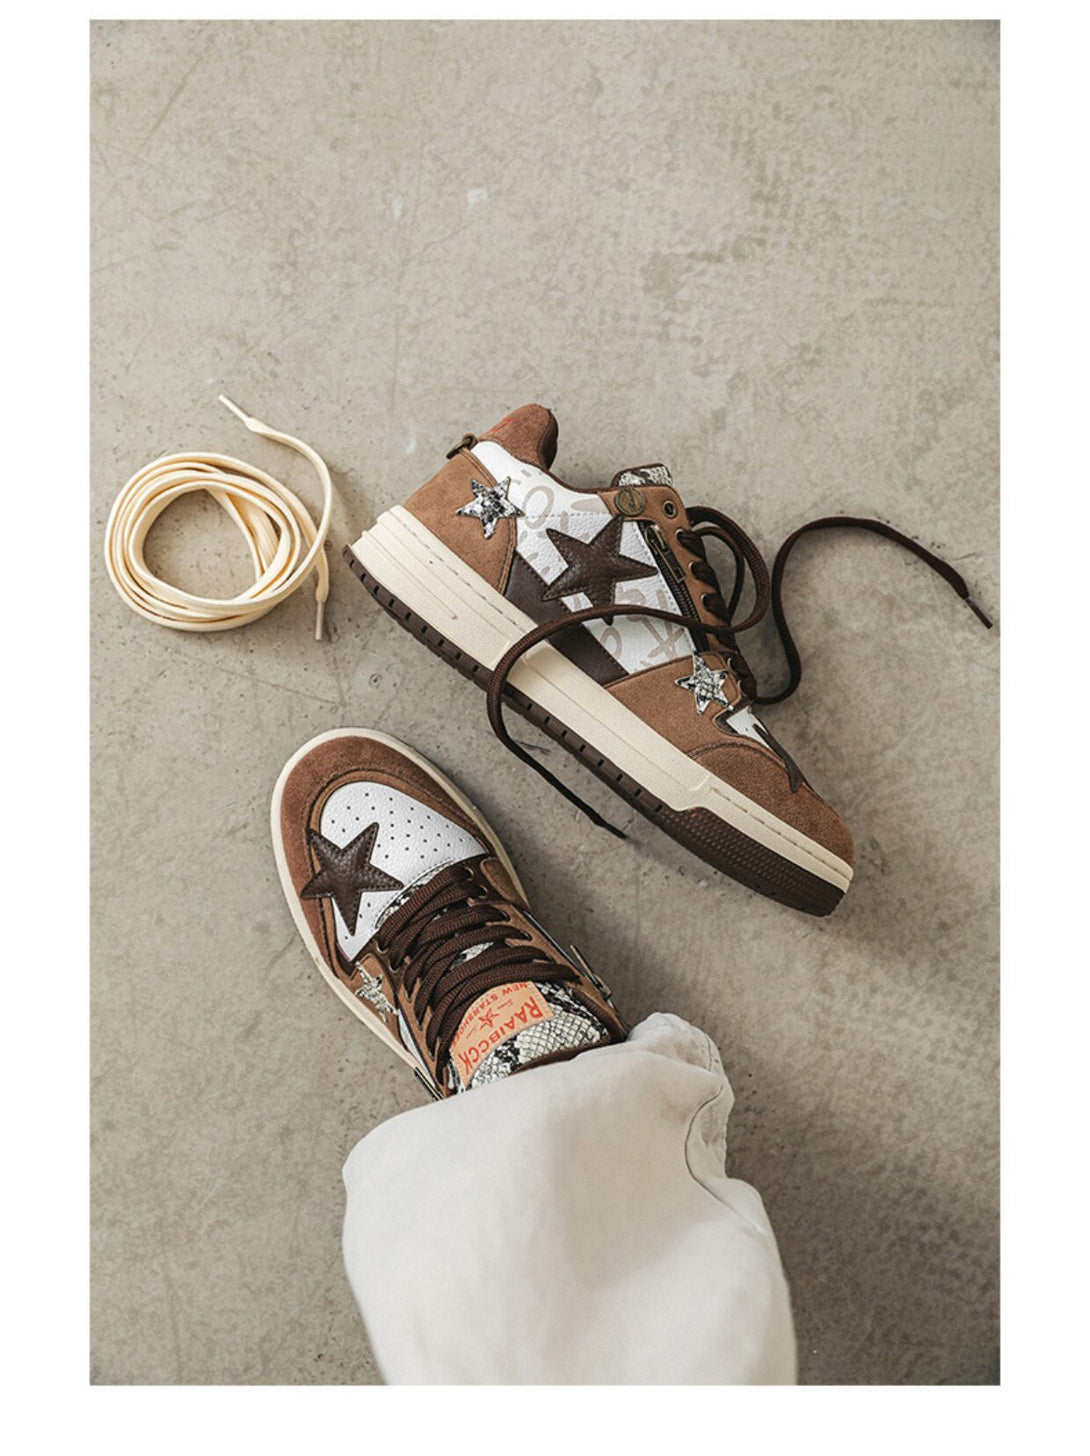 Star Eli1 Skate Sneakers - Brown ,  - Streetwear Shoes - Slick Street